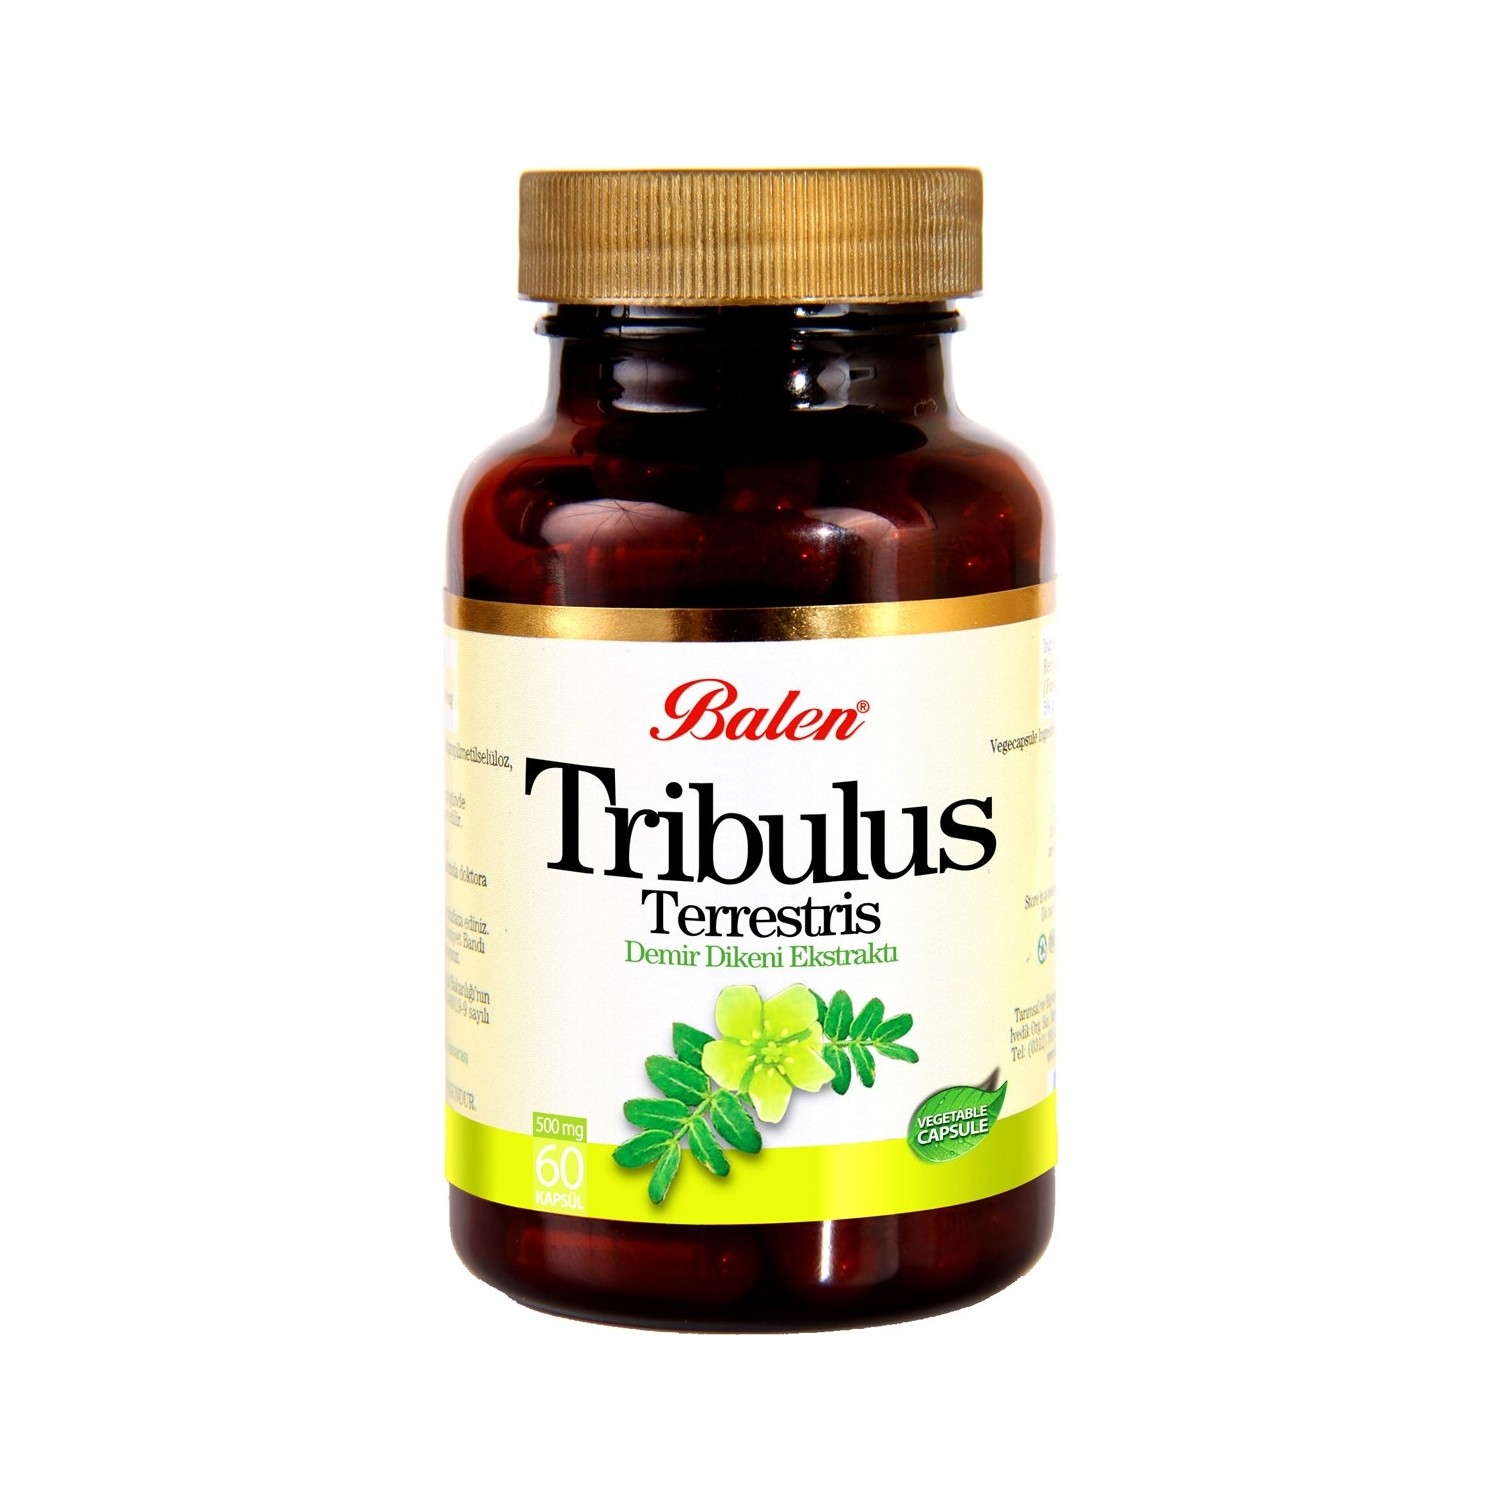 Пищевая добавка Balen Tribulus Terrestris 500 мг, 60 капсул пищевая добавка balen tribulus terrestris 500 мг 2 упаковки по 60 капсул